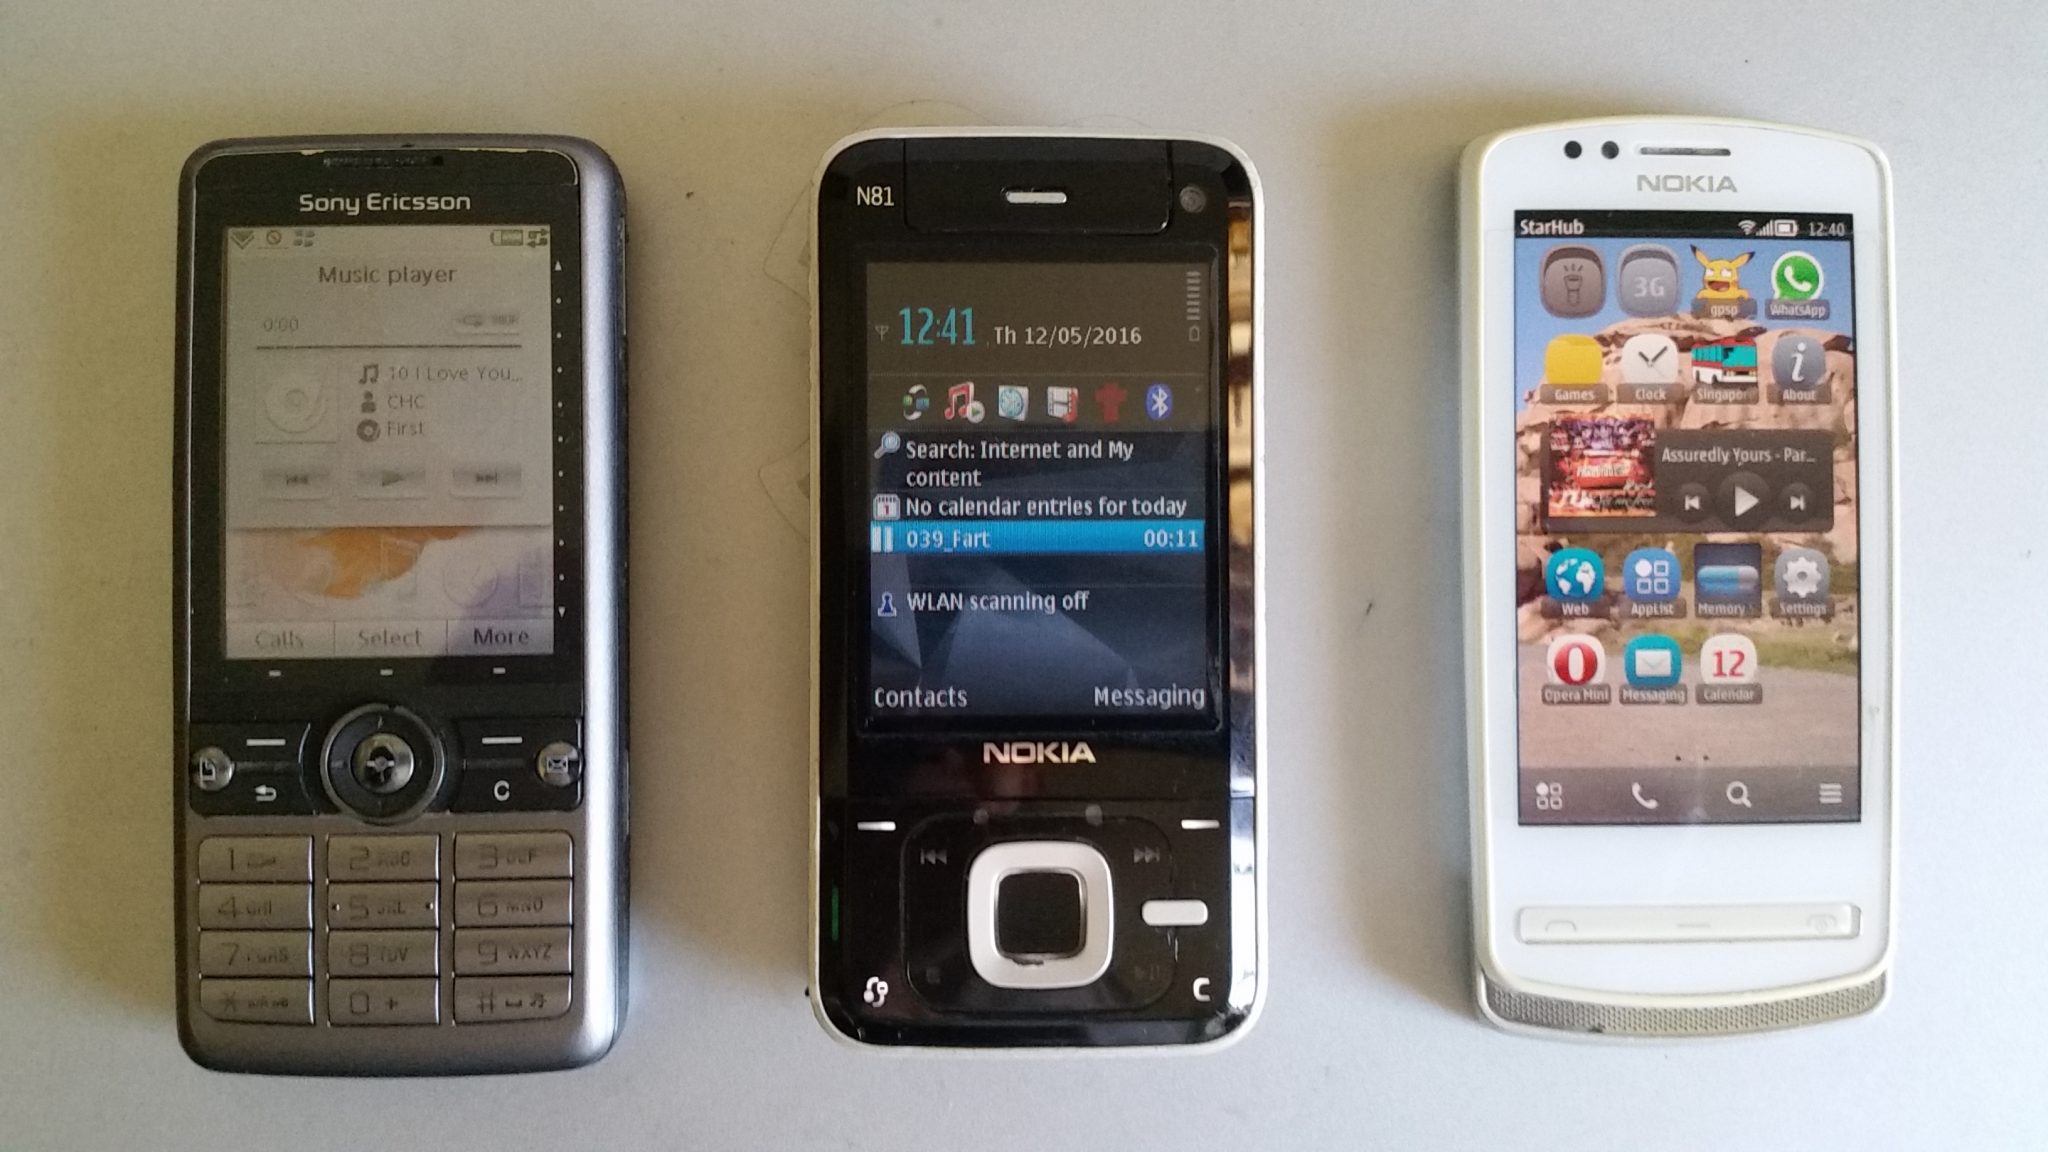 Symbian phones